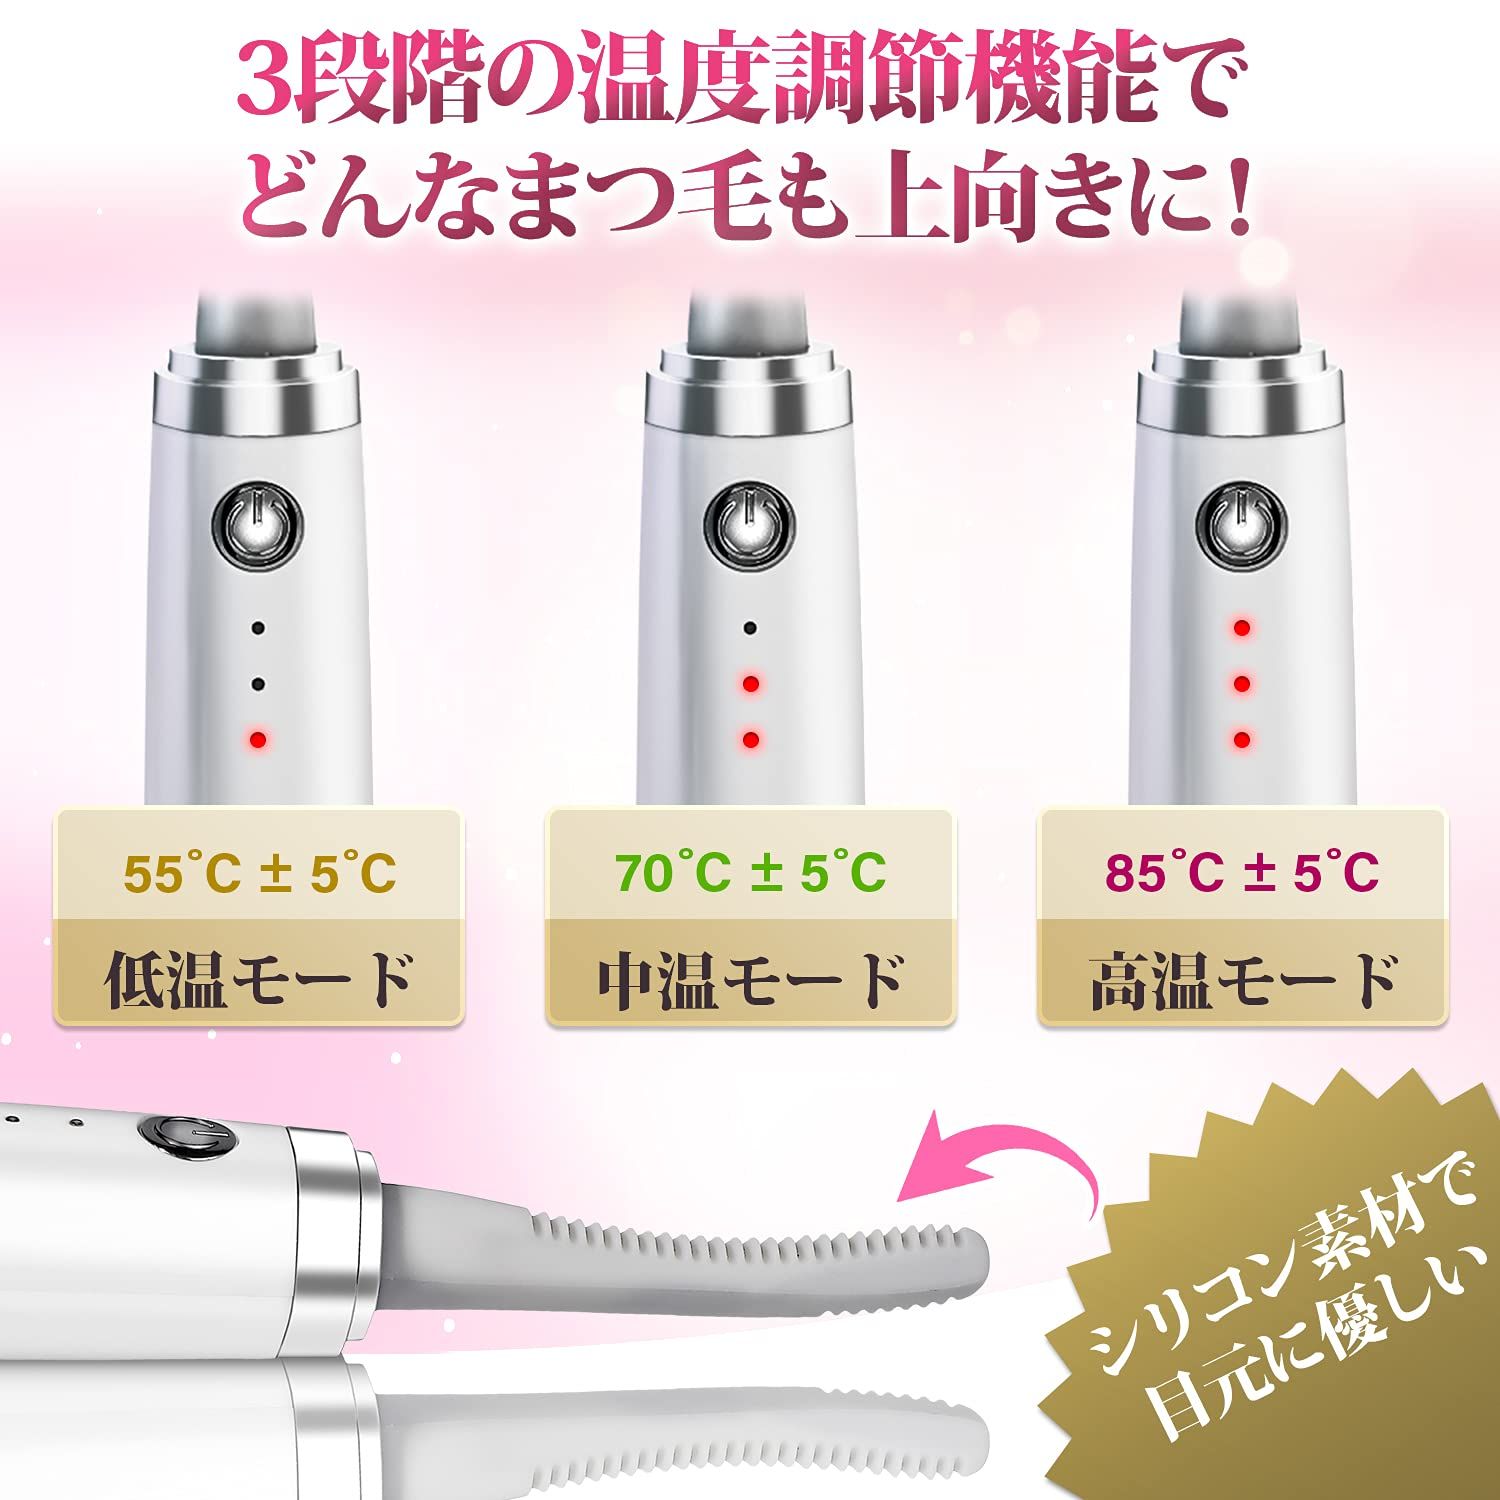 ホットビューラー 充電式 USB リンプカール 3段階温度調節 洗える ビューラー パールホワイト 3